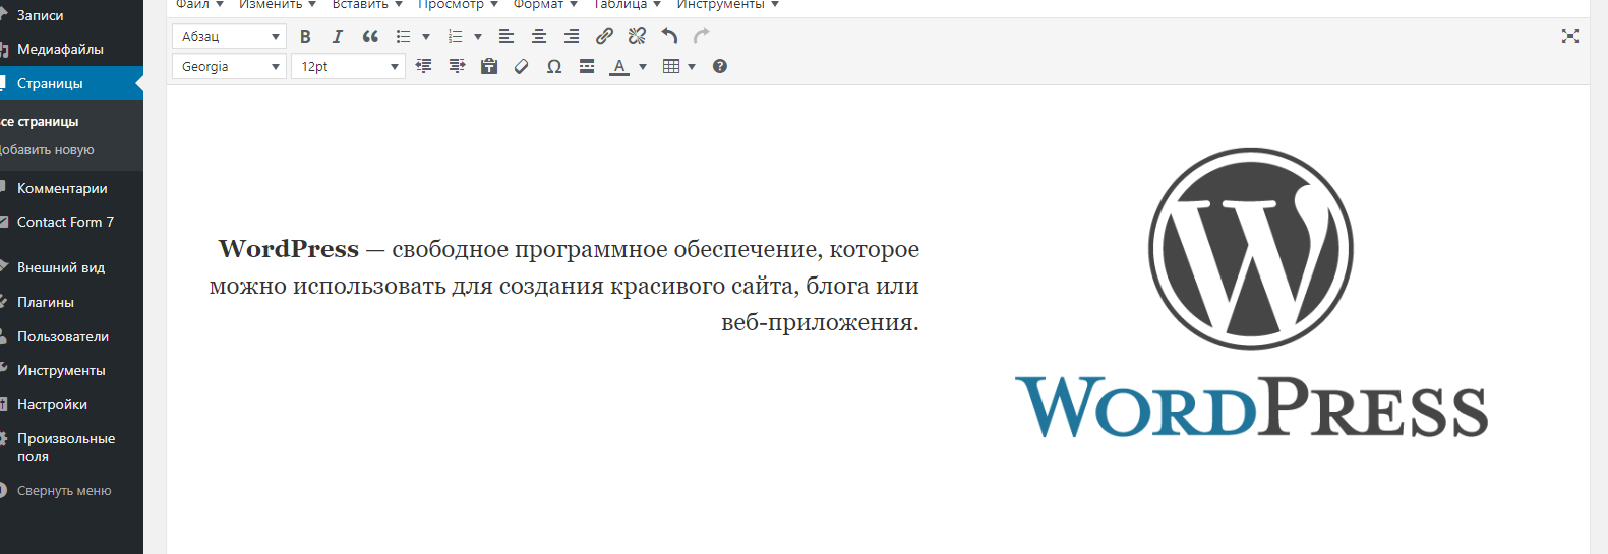 Разработка сайта на wordpress